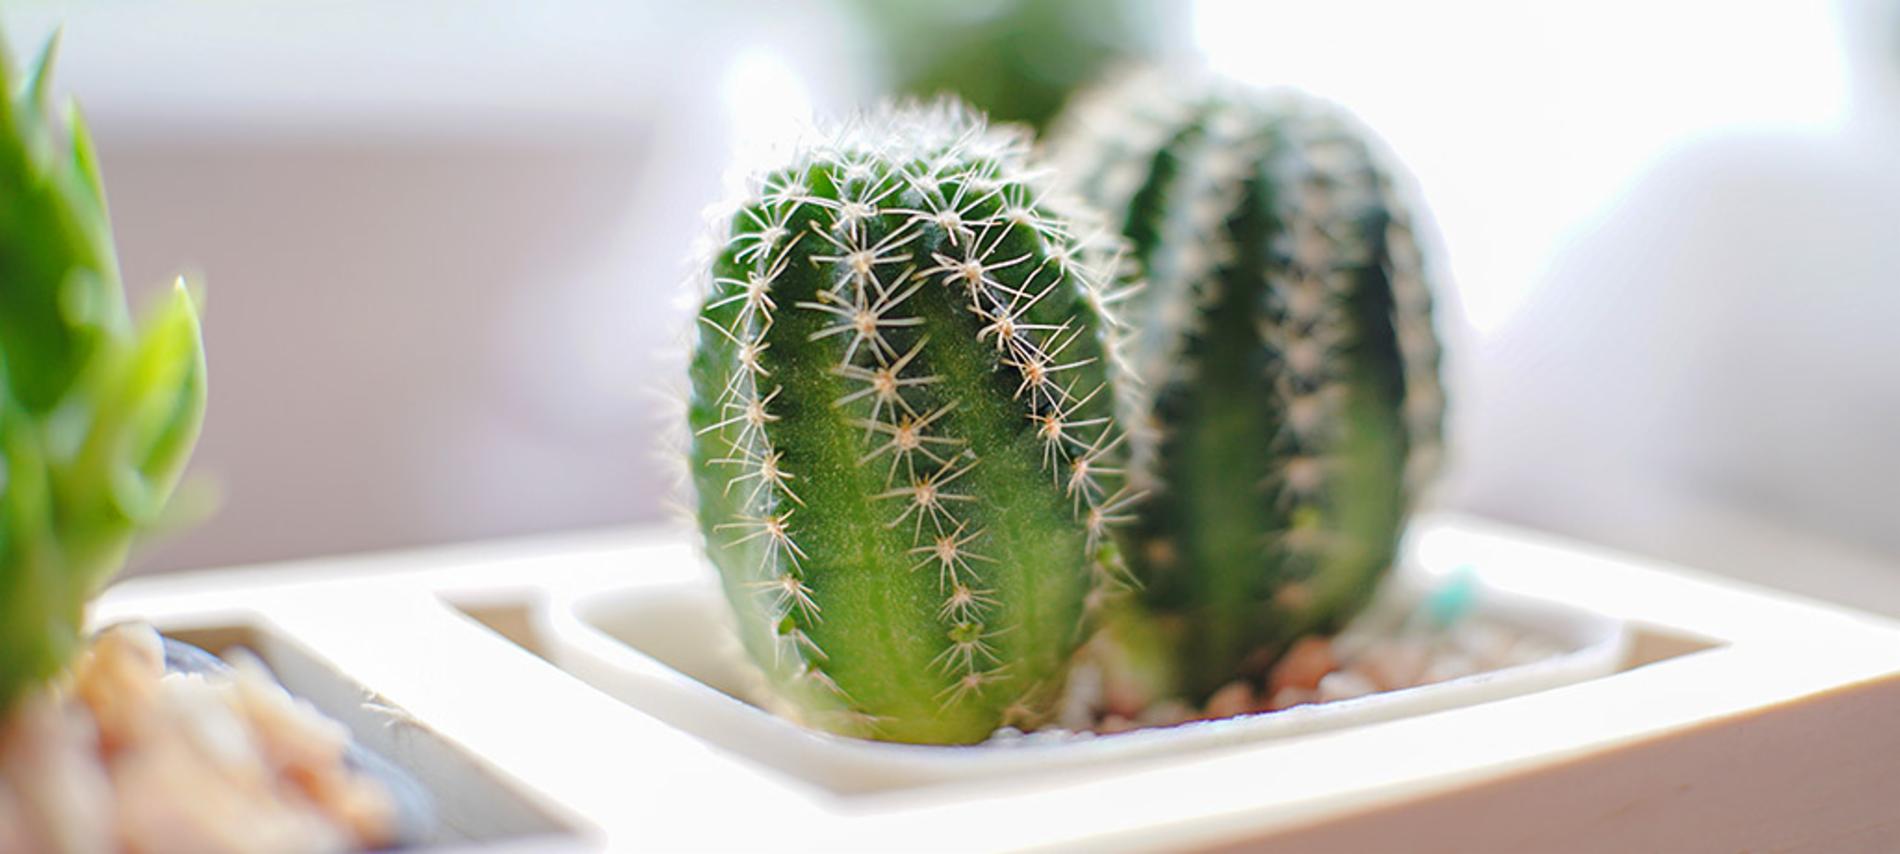 Cactus en macetitas: cuidados y consejos